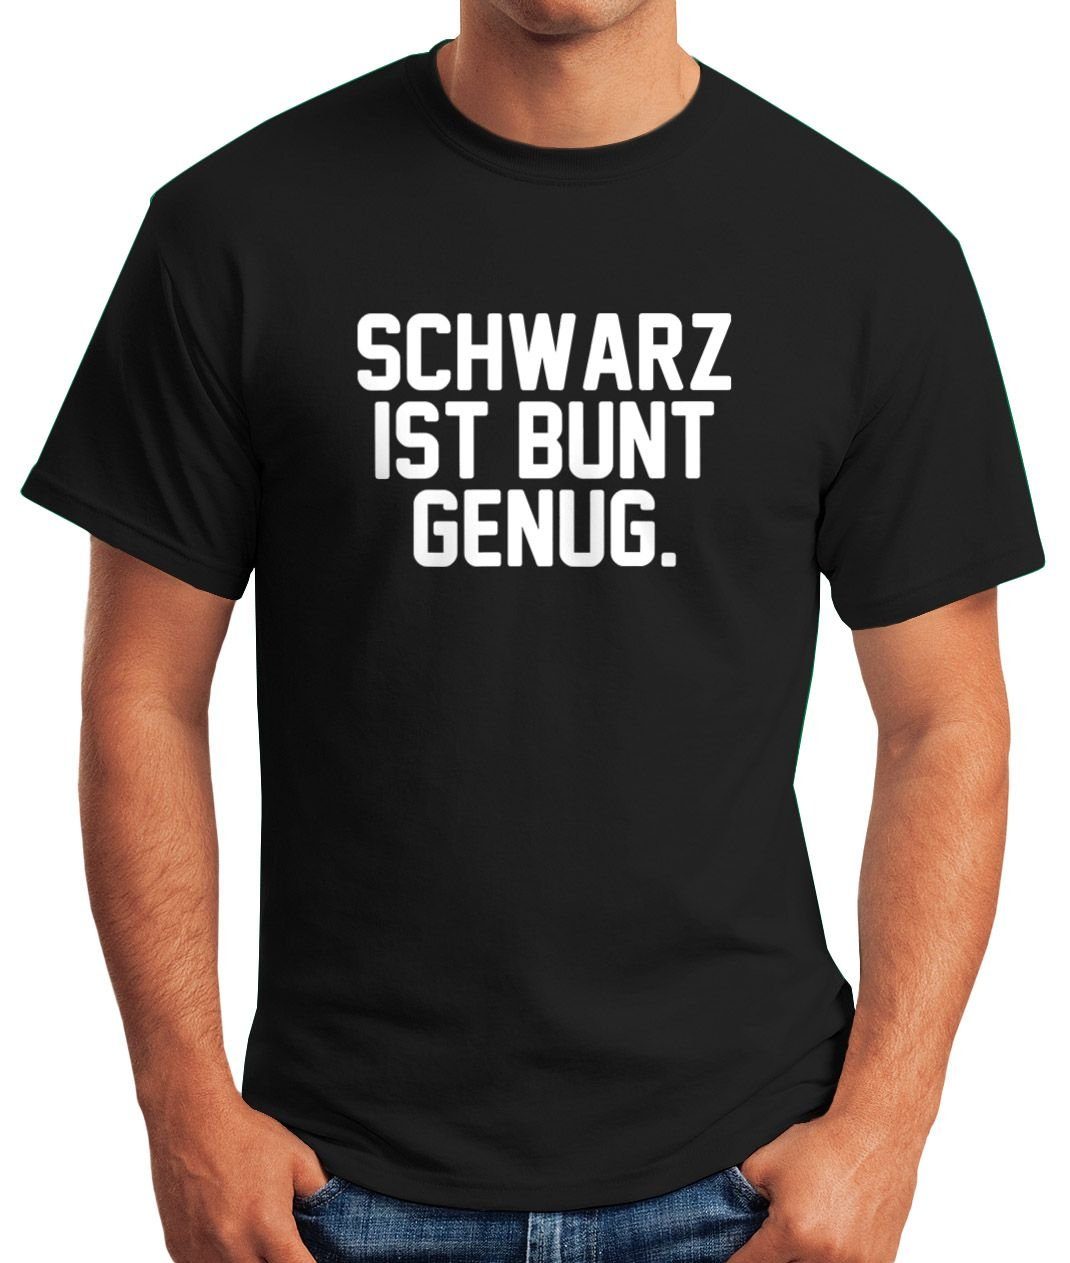 MoonWorks Print-Shirt Herren Fun-Shirt Schwarz Spruch Moonworks® ist T-Shirt mit lustiges bunt Print genug